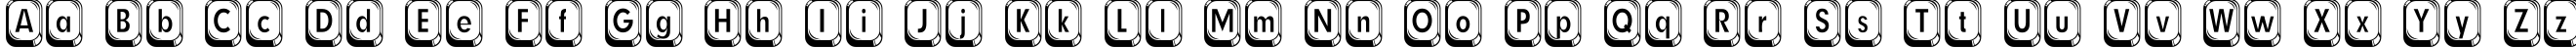 Пример написания английского алфавита шрифтом Betsy Flanagan